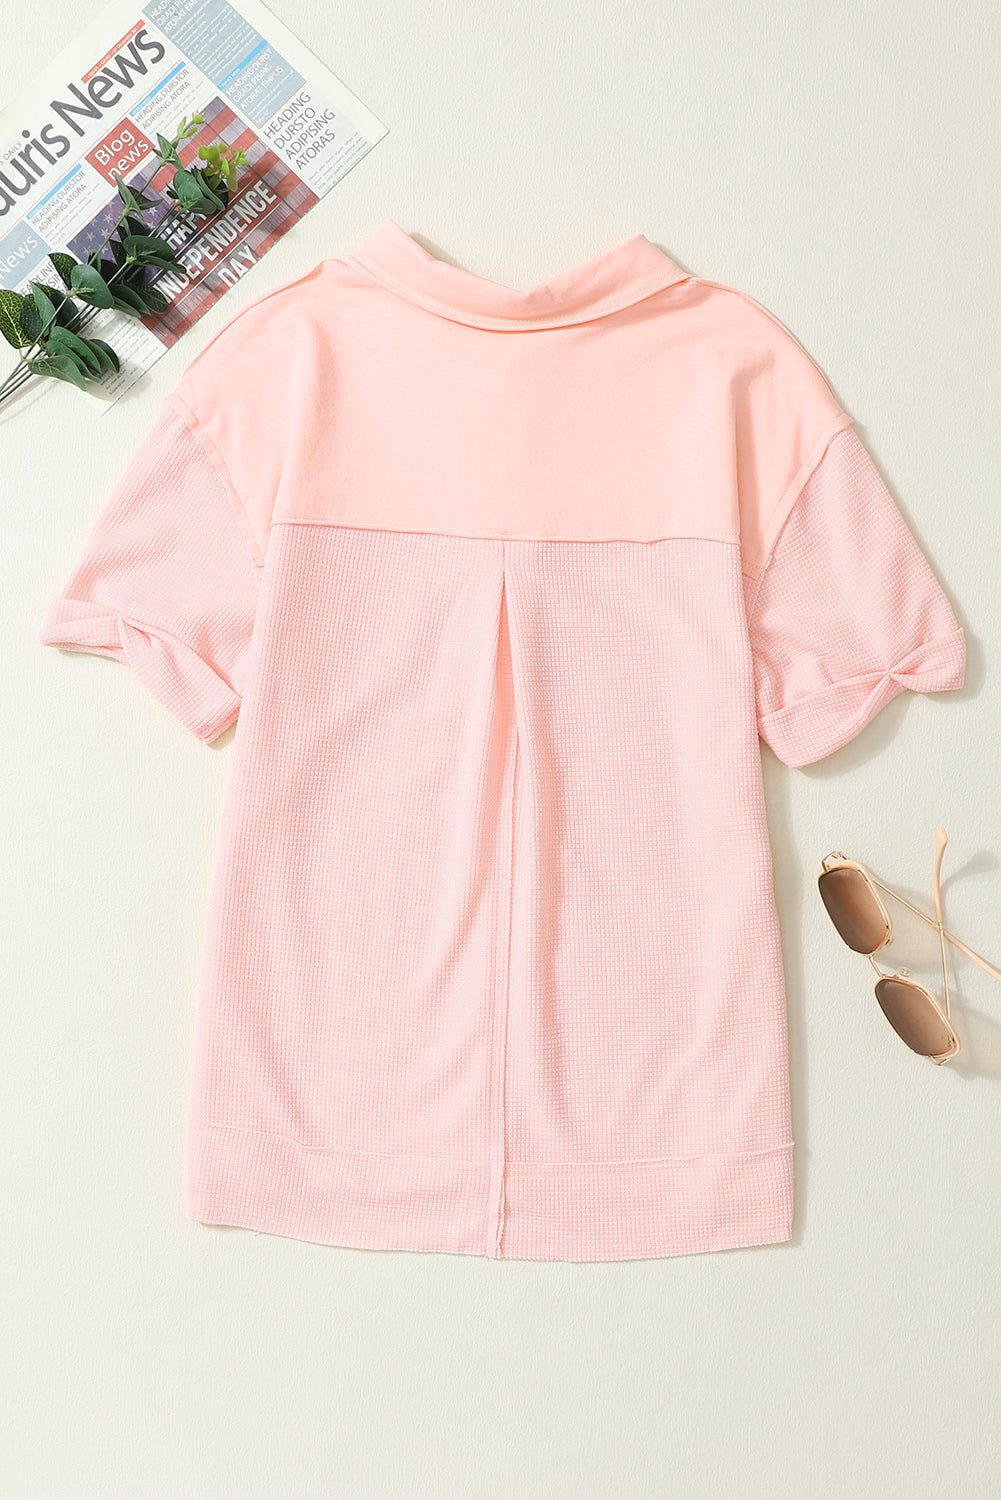 Chemise boutonnée à manches courtes en tricot gaufré rose délavé à l'acide